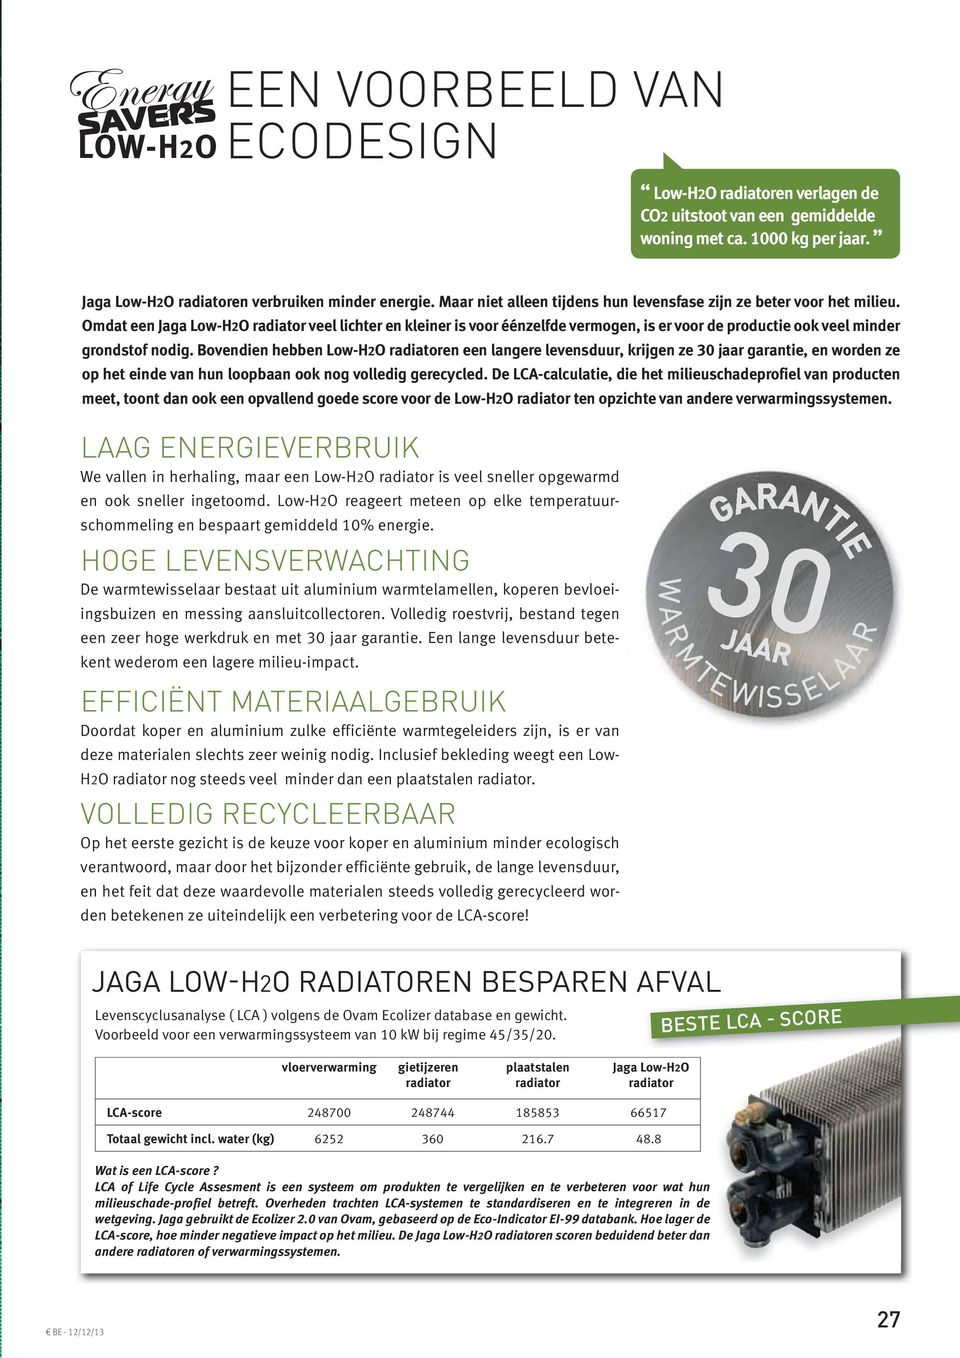 Omdat een Jaga Low-H2O radiator veel lichter en kleiner is voor éénzelfde vermogen, is er voor de productie ook veel minder grondstof nodig.